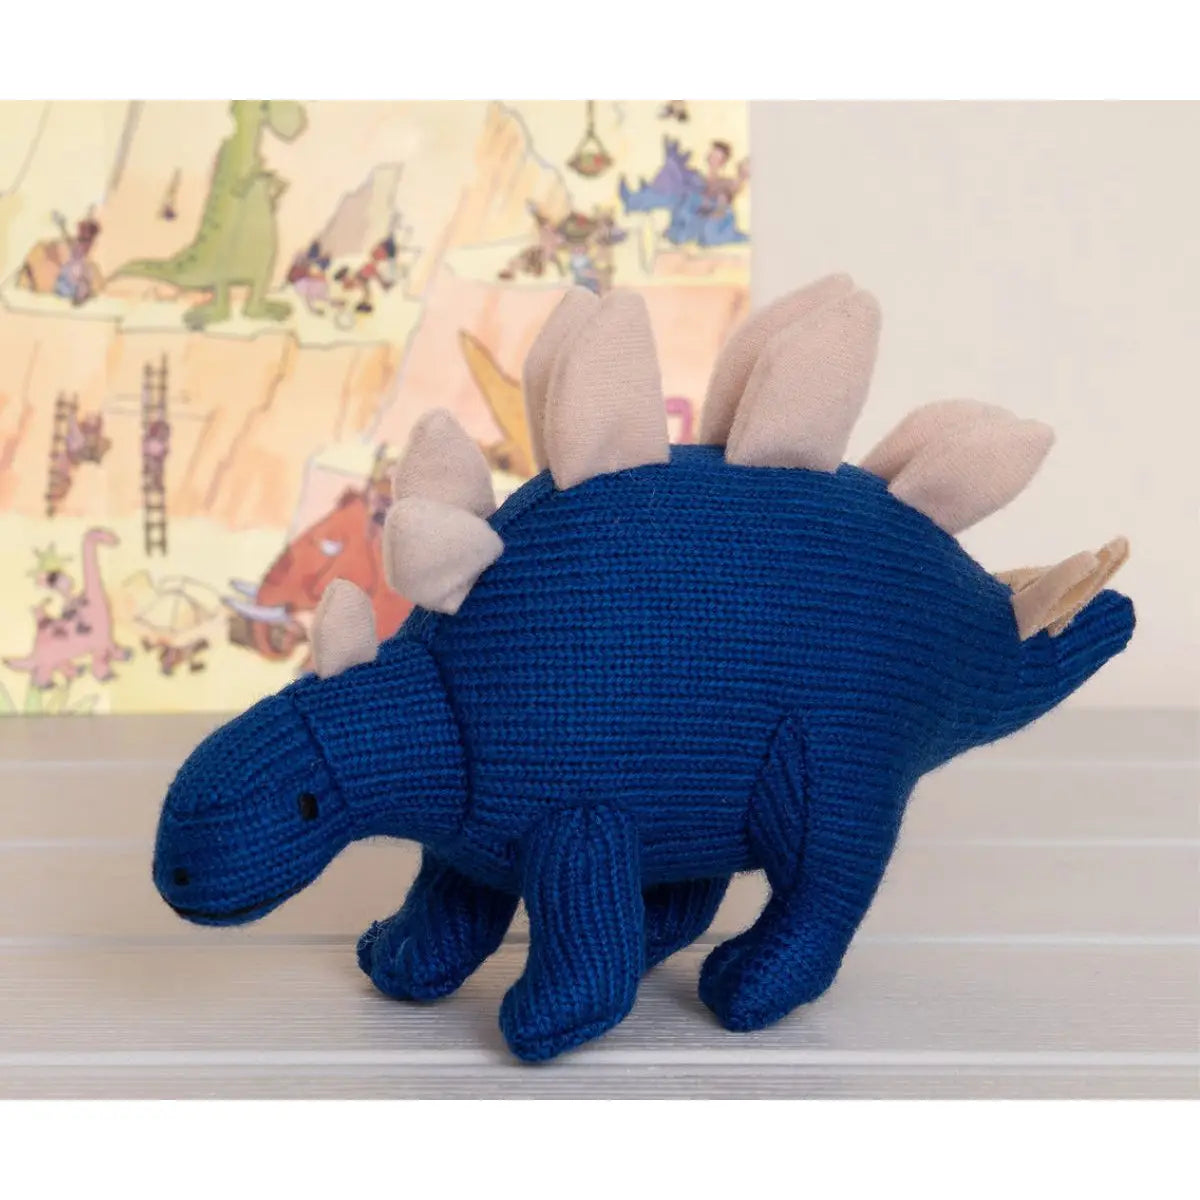 Stegosaurus Dinosaur Plush Toy